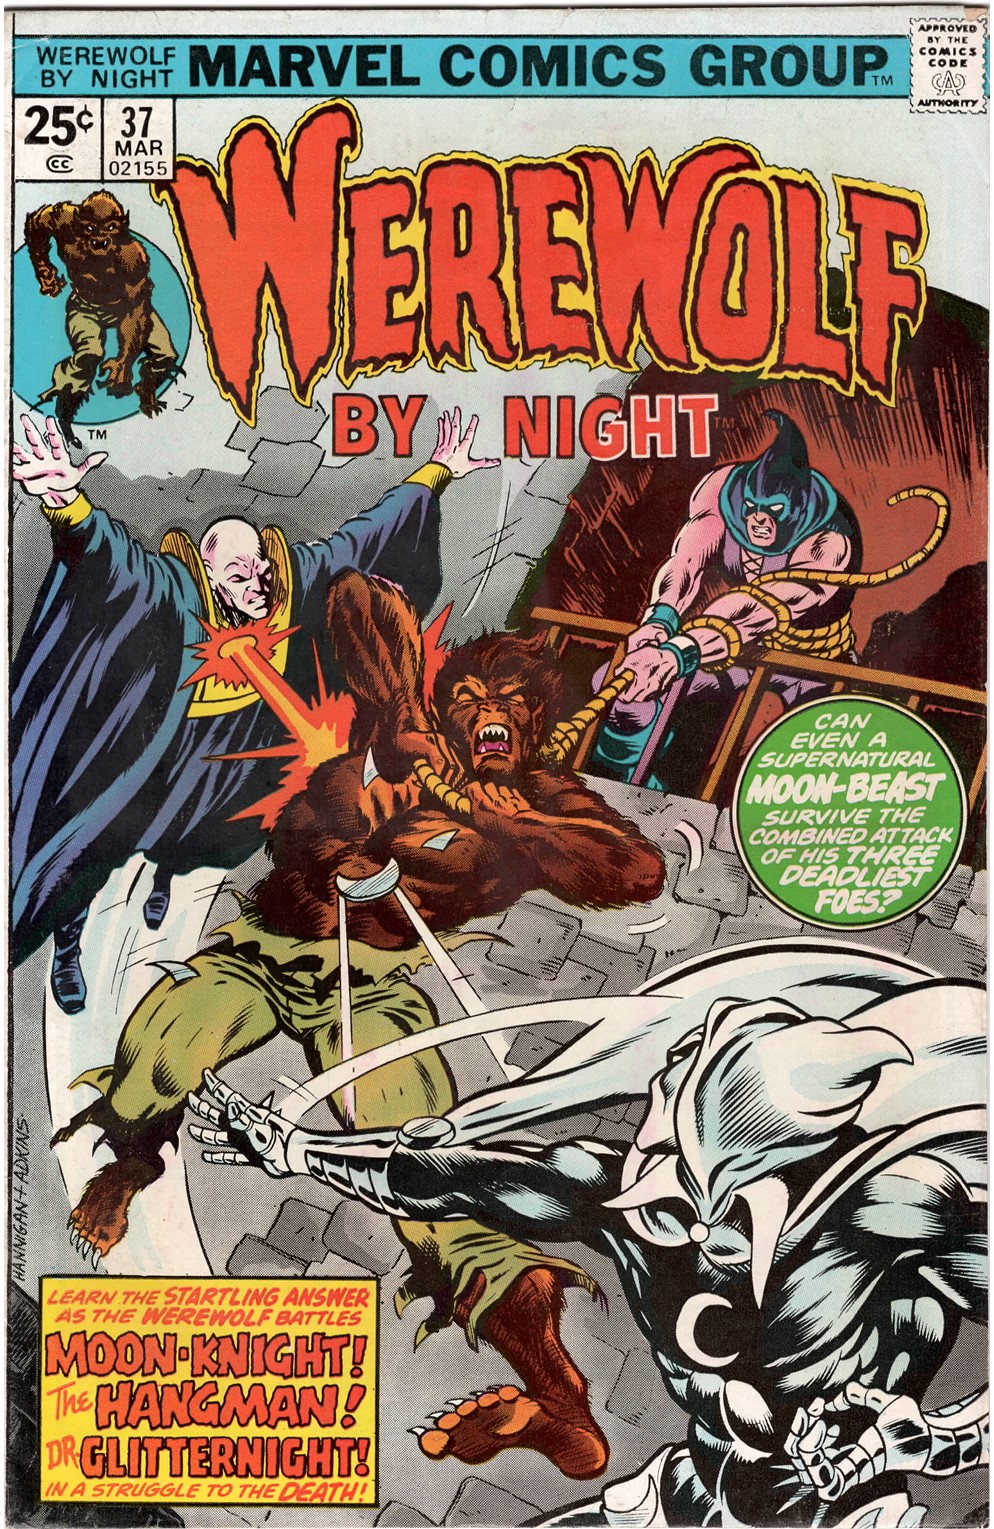 Werewolf By Night #37